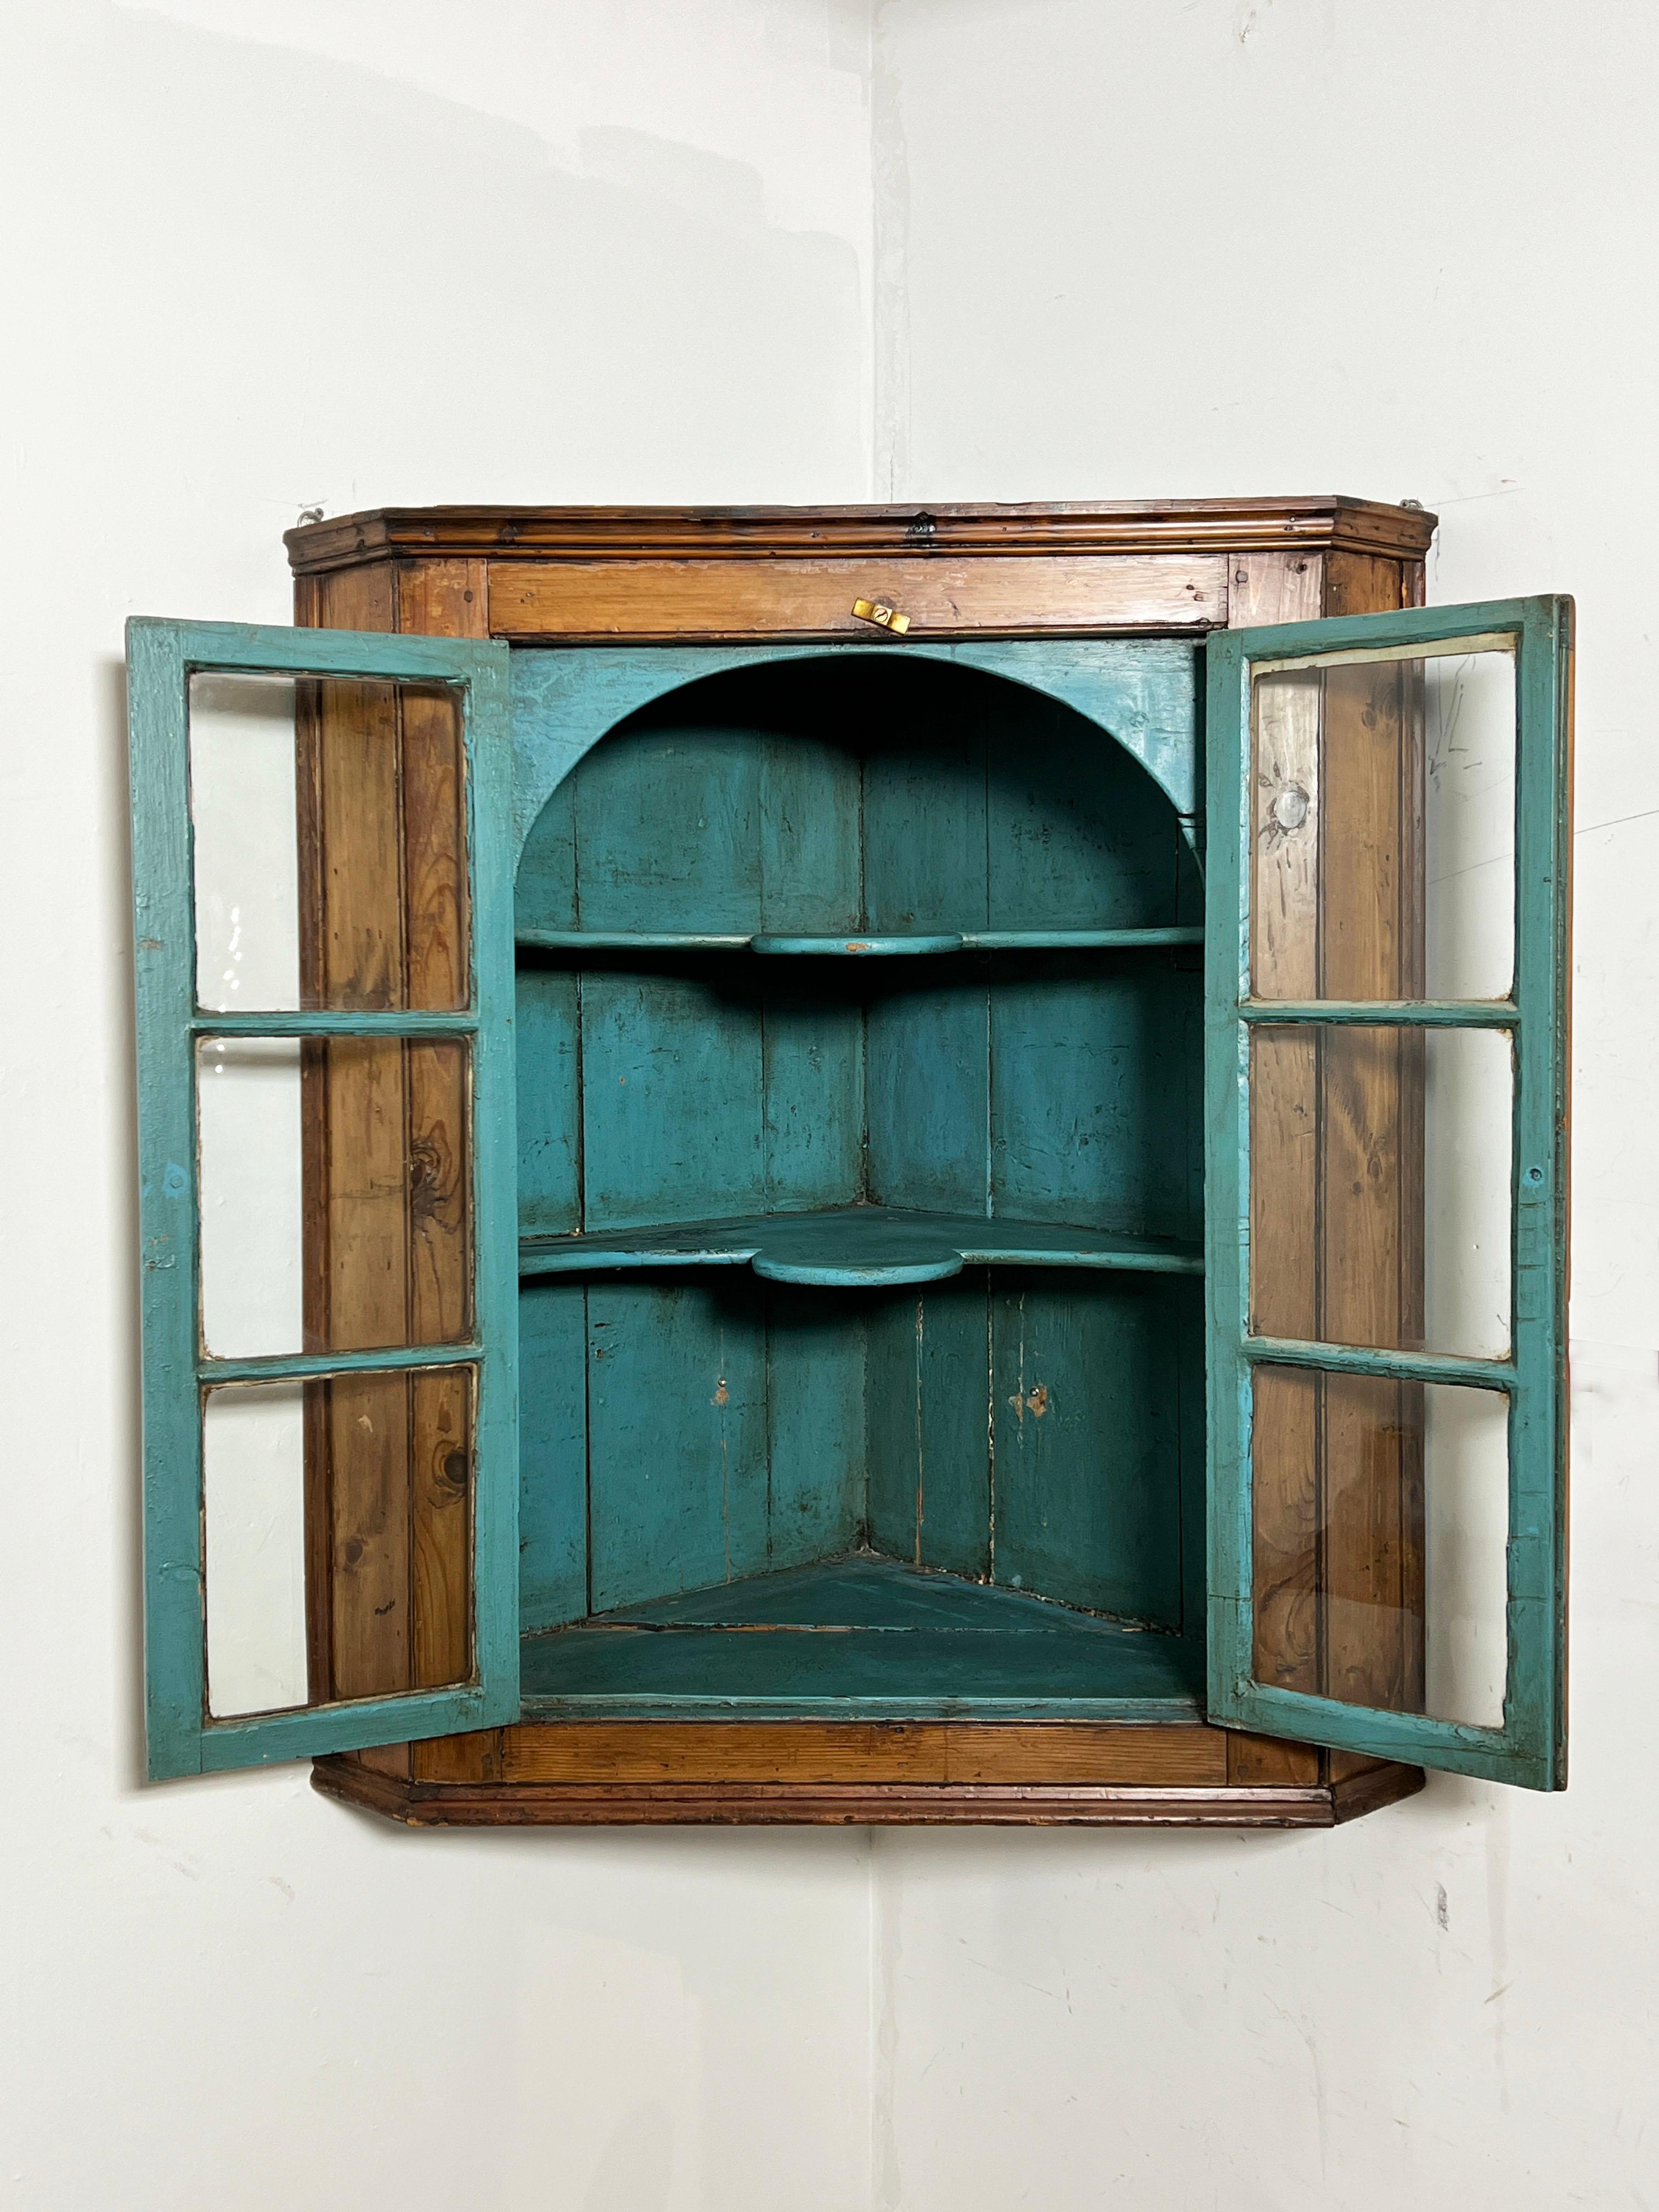 Ein hängender Kiefern-Eckschrank aus Neuengland aus dem 18. Jahrhundert (ca. 1760) mit preußisch-blauem gewölbtem Innenraum und verglasten Türen.